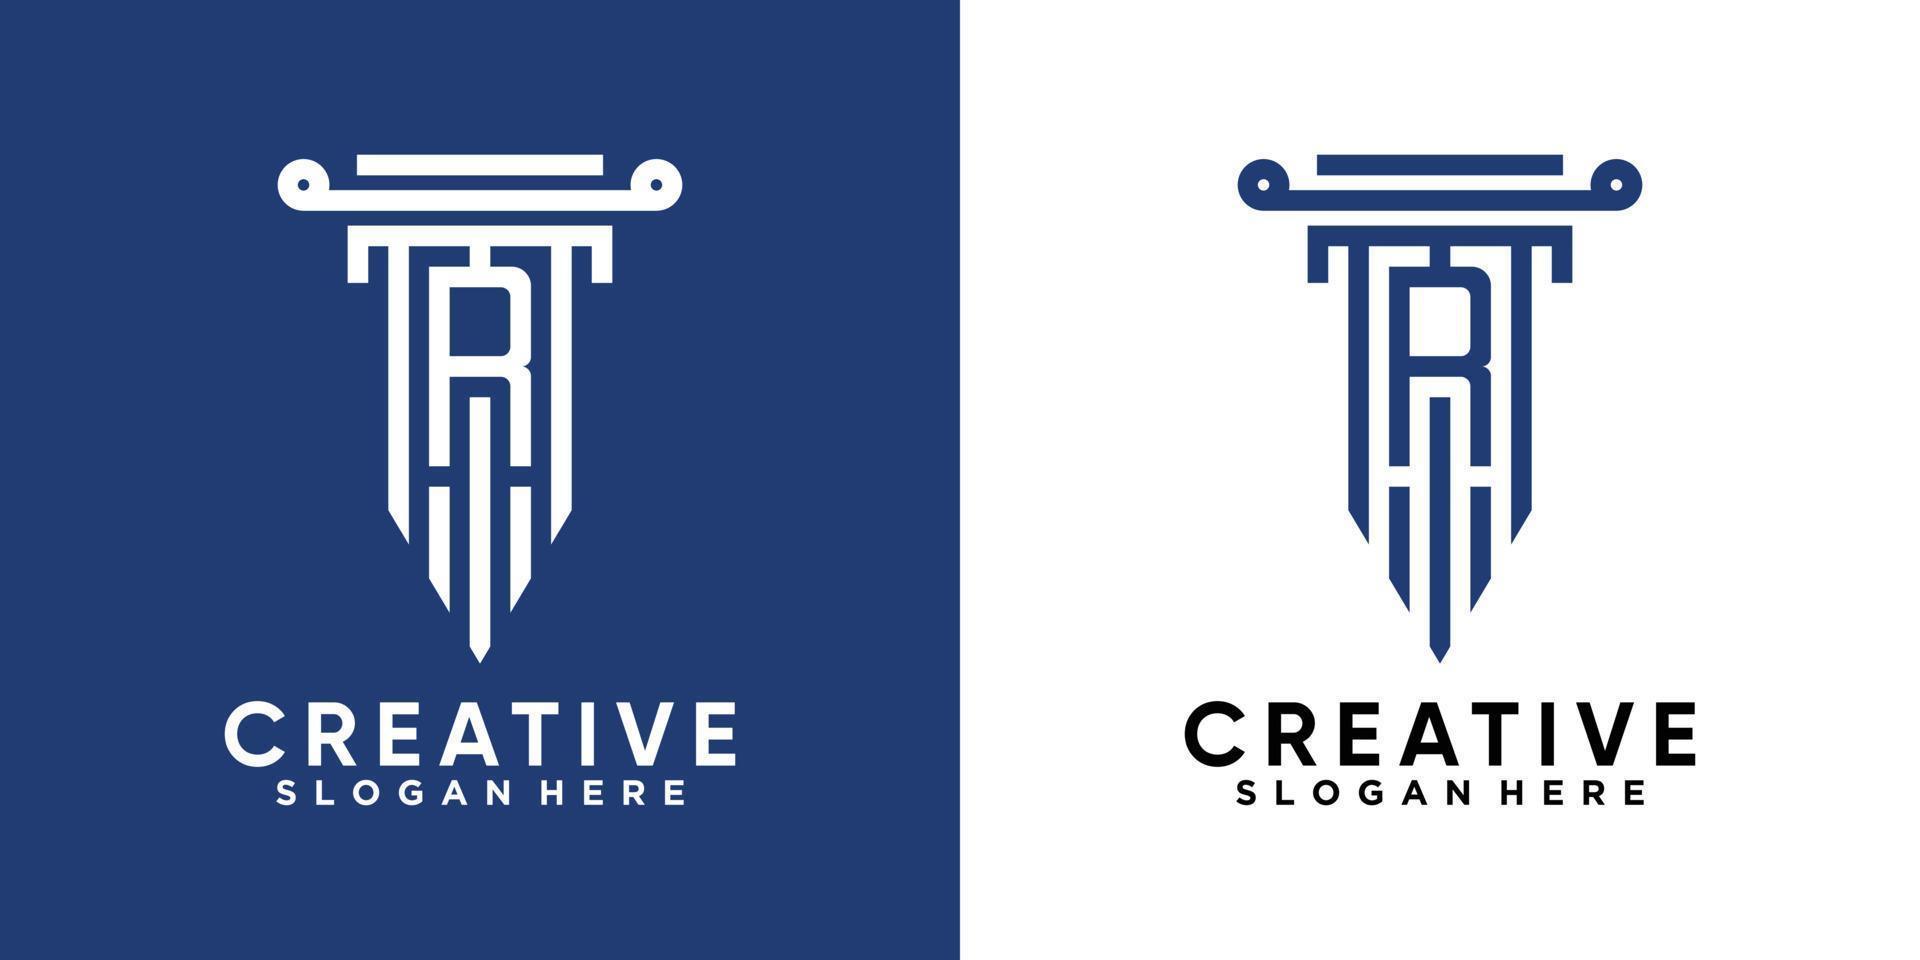 création de logo pilier et dernier r avec concept créatif vecteur